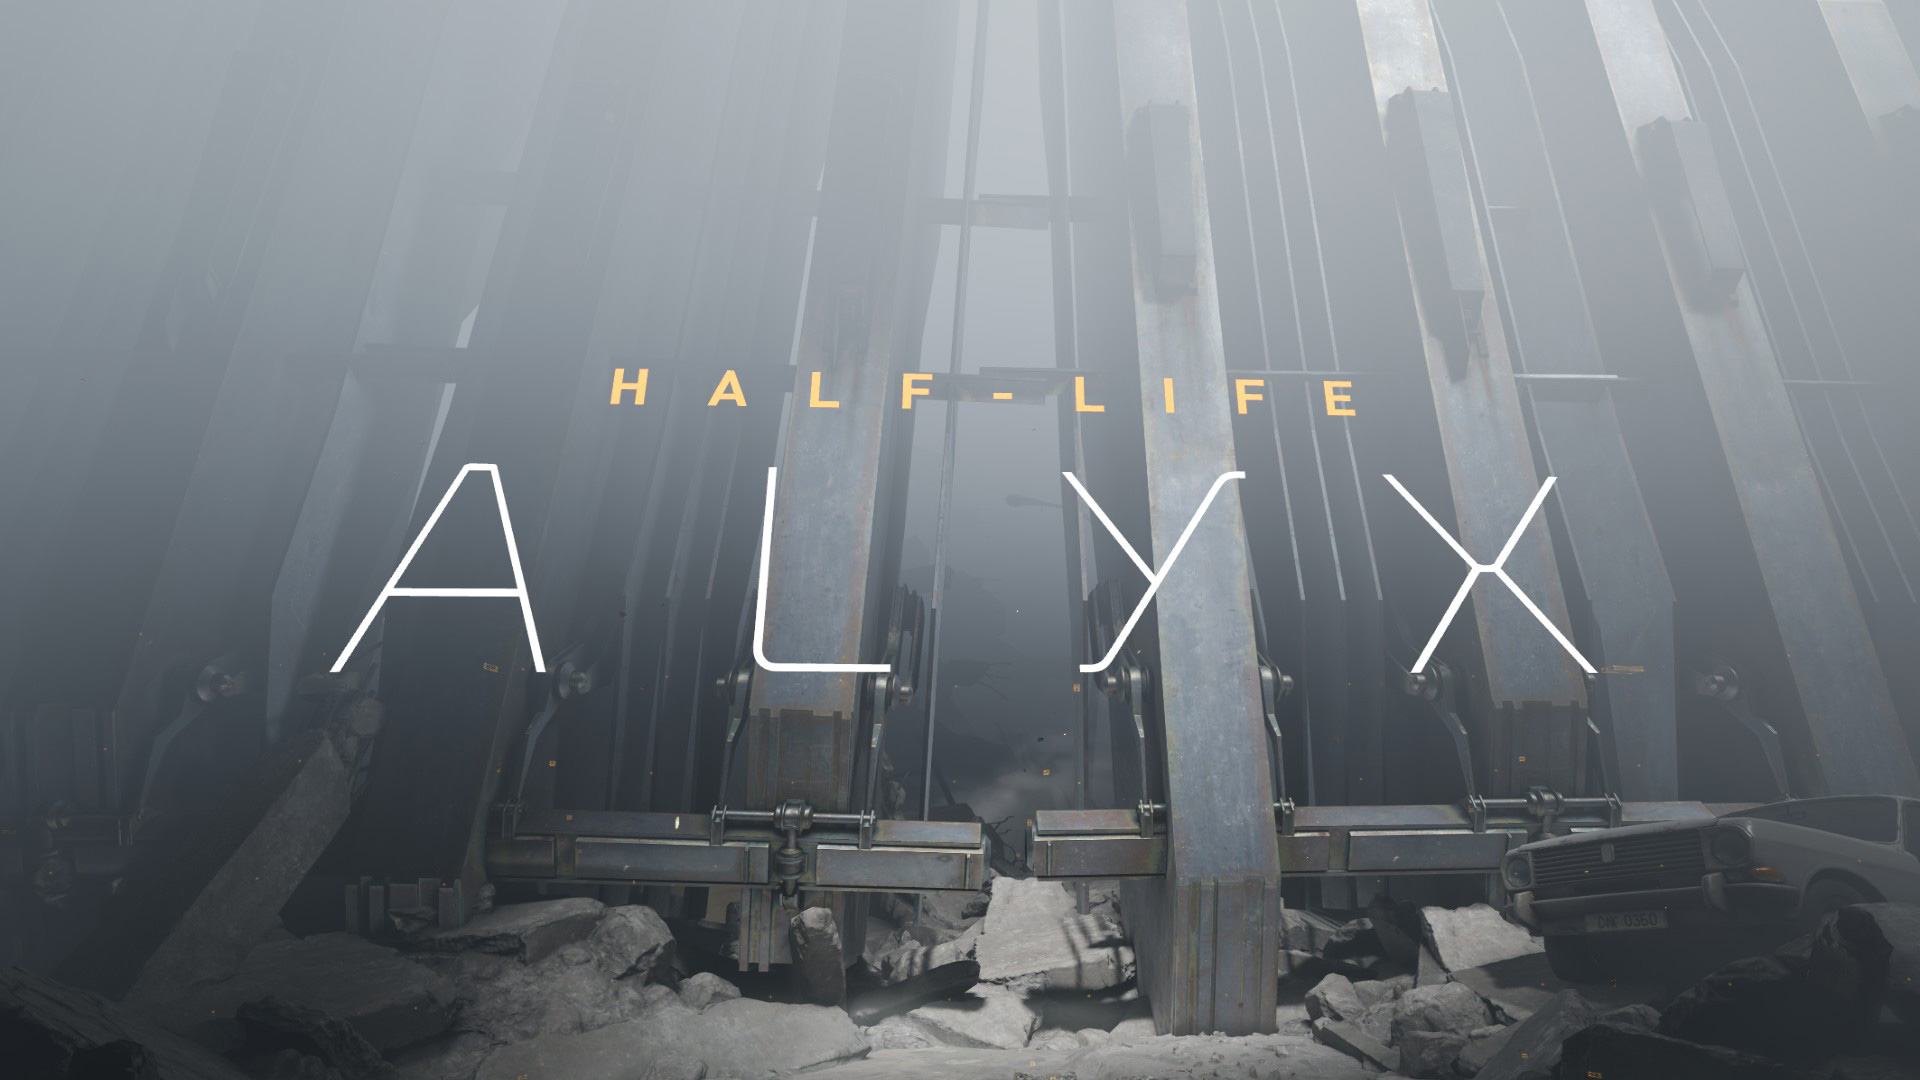 Half - Life: Alyx - txartel grafikoen errendimenduaren proba eta joko esperientzia
